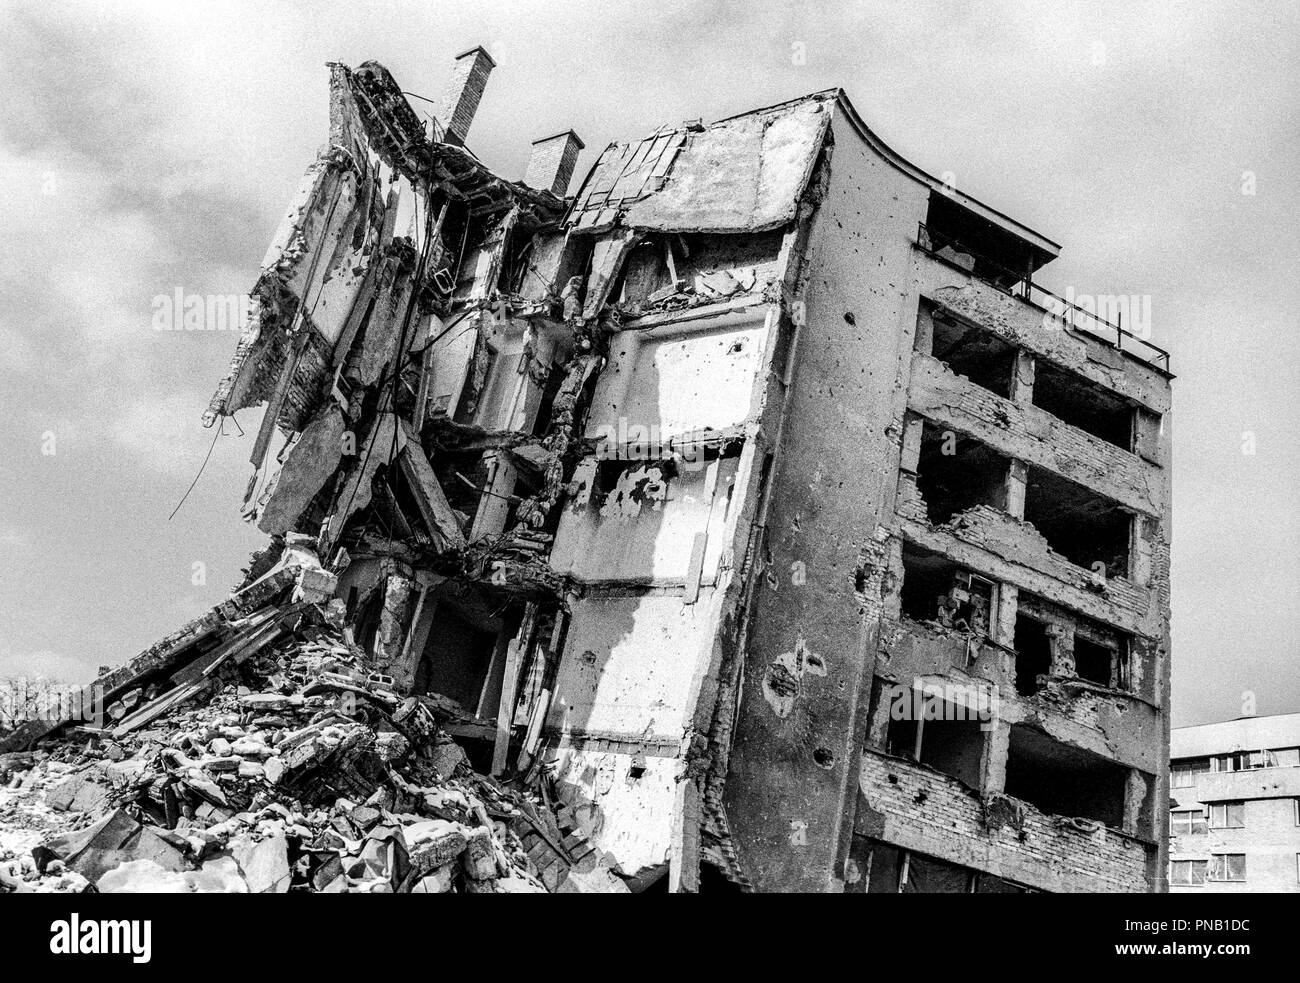 Während des Krieges 1992-1995, Grbavica wurde früh durch die Armee der Republika Srpska besetzt und blieb unter serbischer Kontrolle während der Belagerung. Aus dem hohen Wohngebäuden, serbische Scharfschützen gezielt die Sarajevo Bevölkerung entlang Sniper Alley. Die Nachbarschaft war stark geplündert und zerstört. Stockfoto